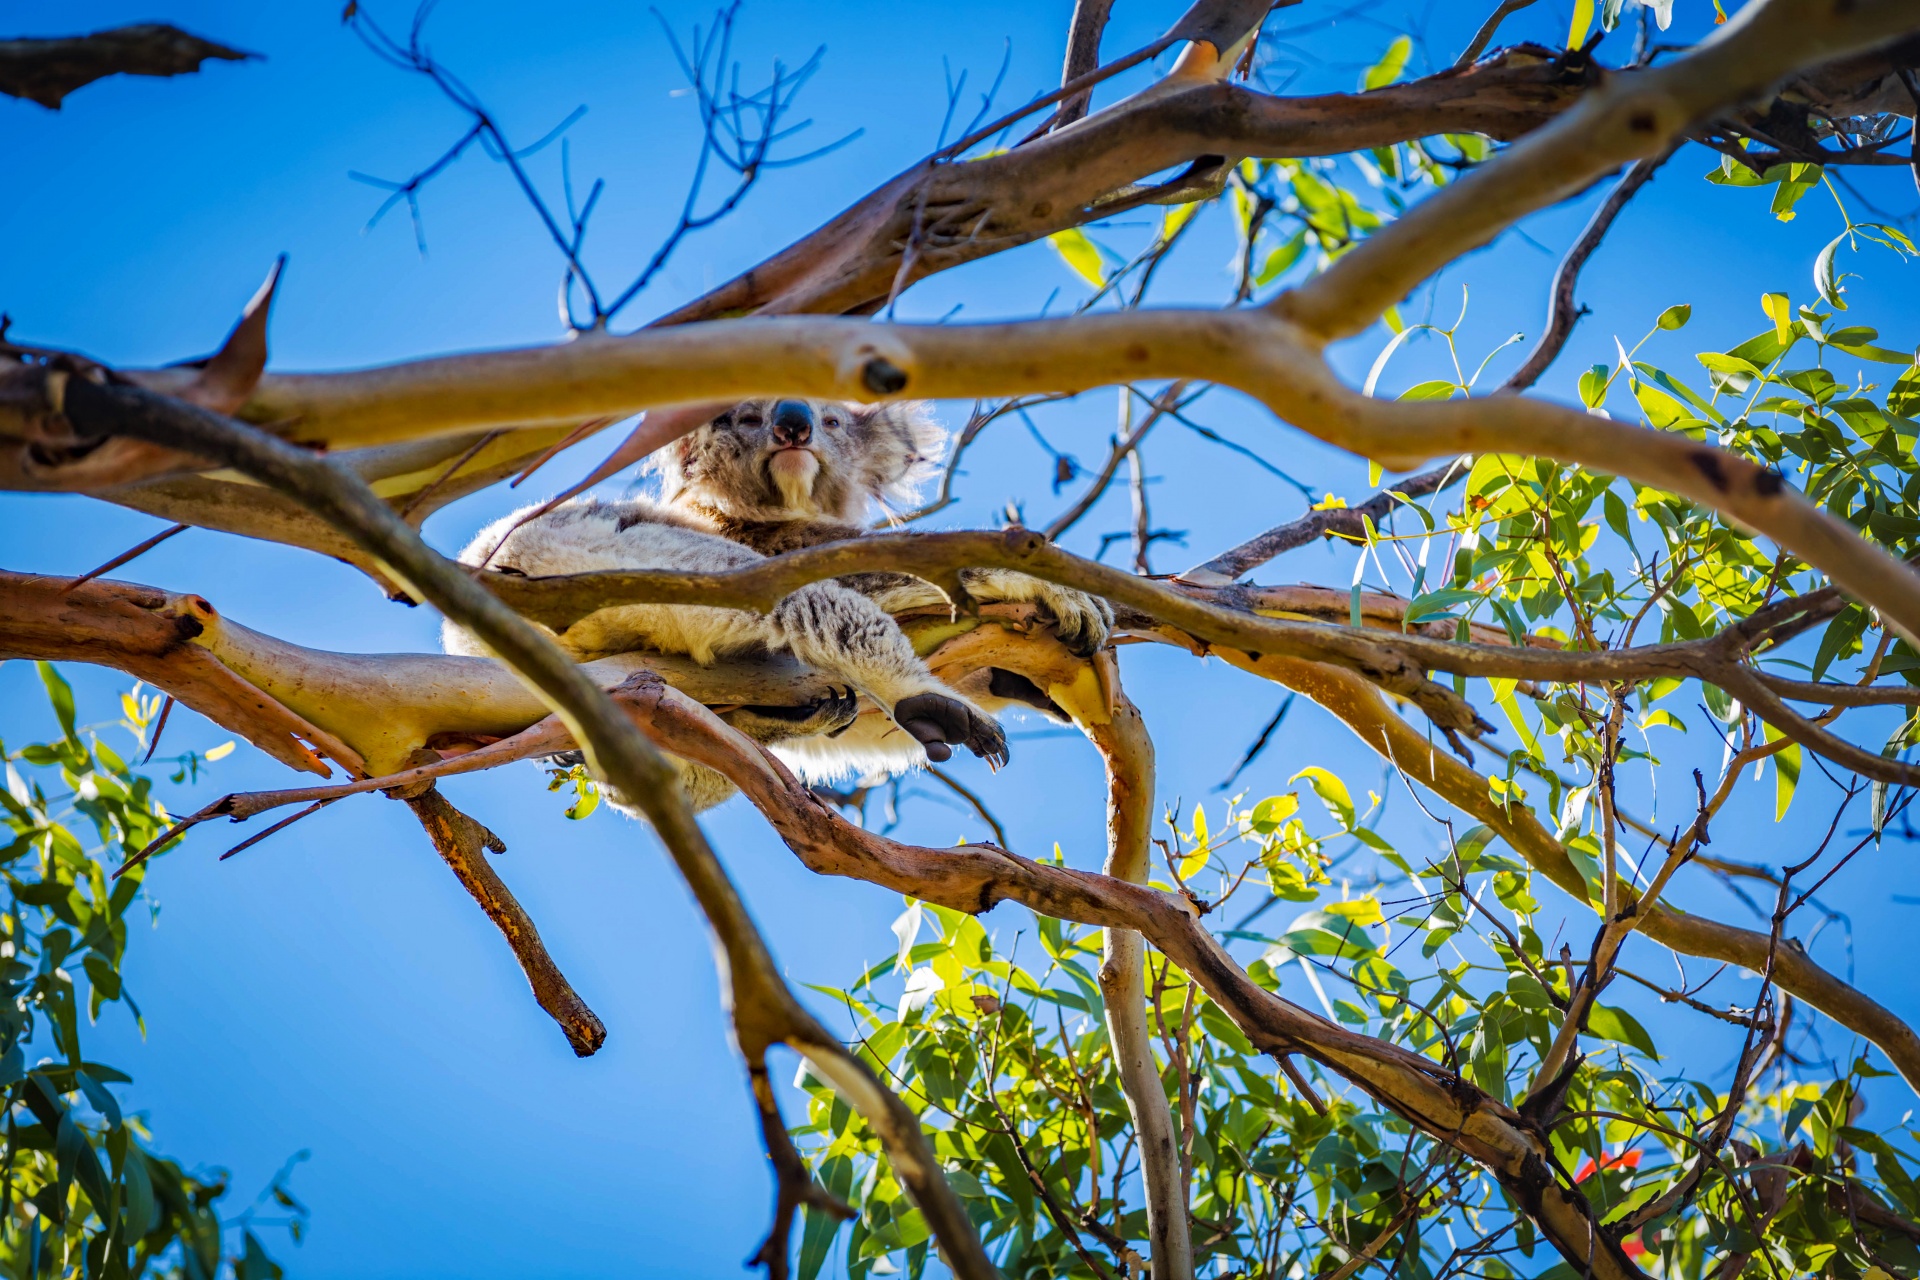 Koala In Australian Bush